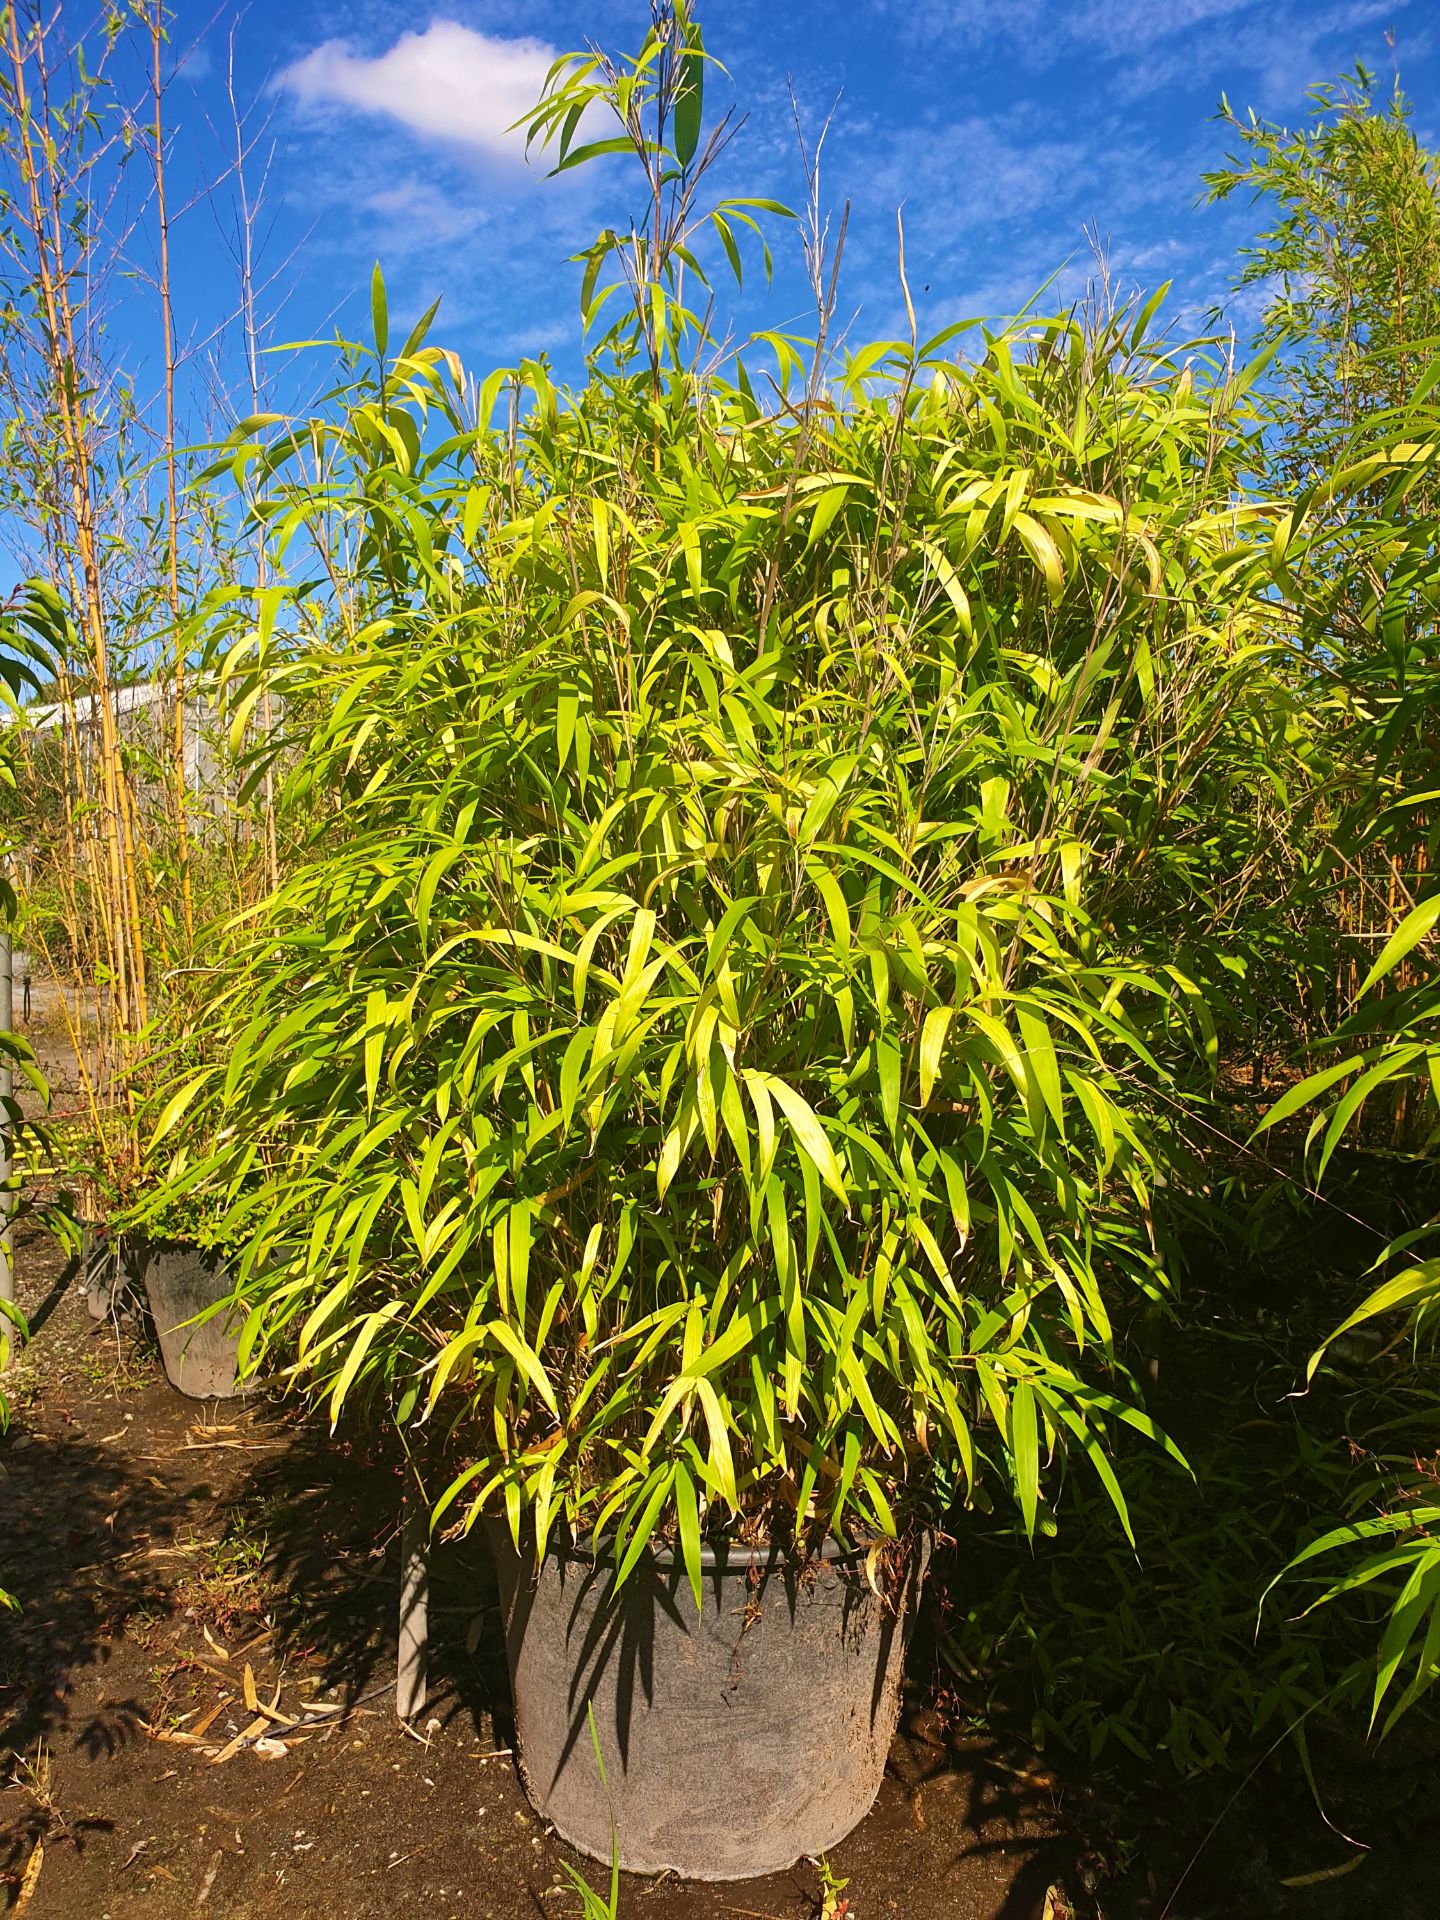 1 Pseudosasa japonica - good big plant